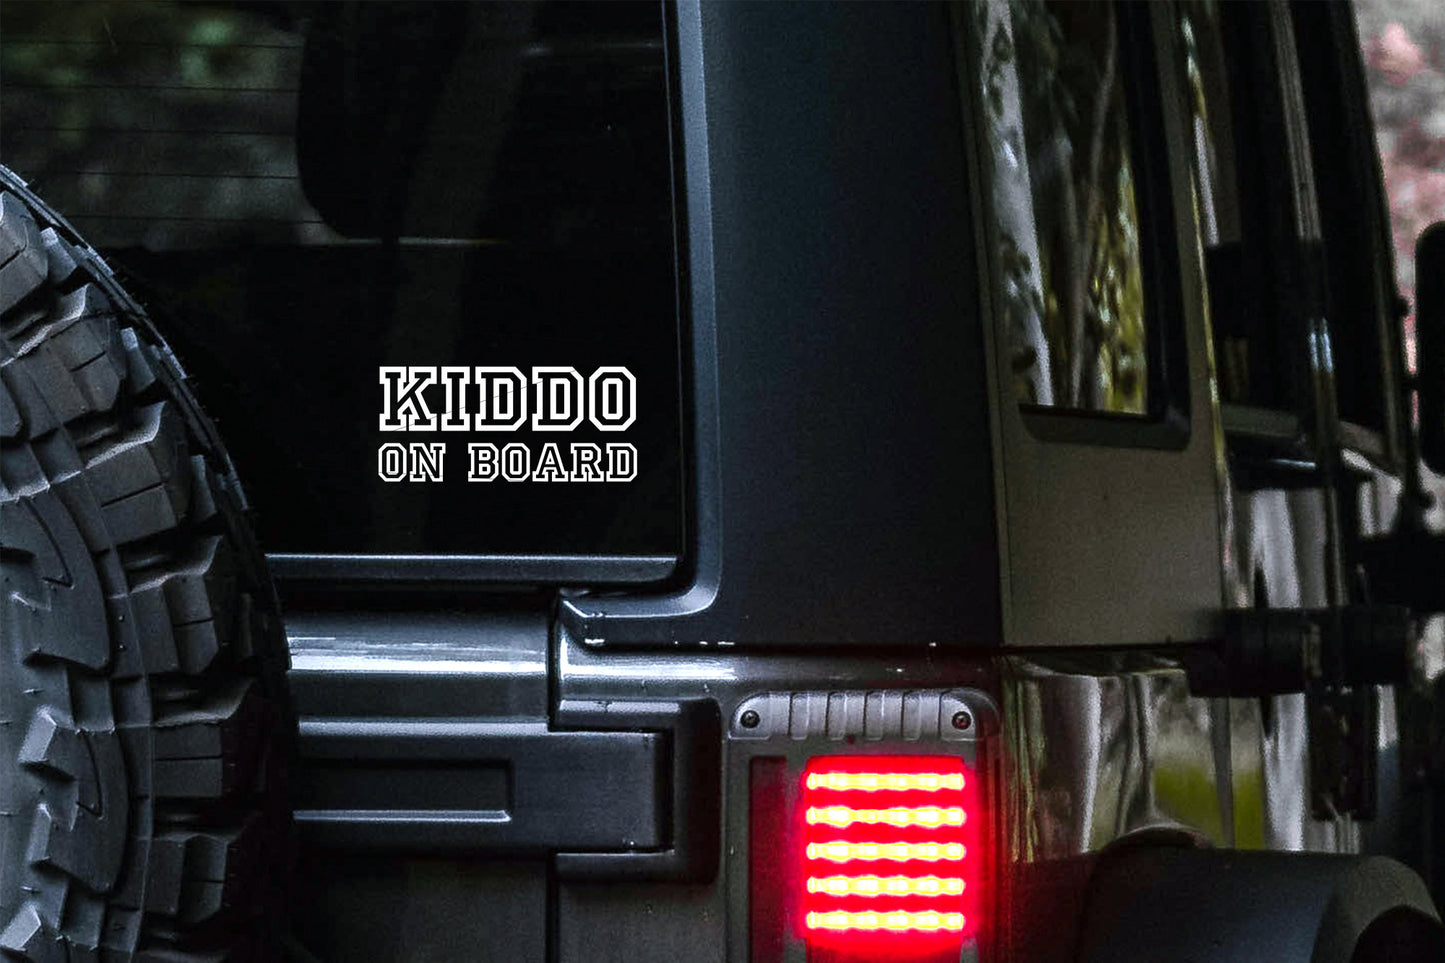 Kiddo on Board Car Decal | Safety Bumper Sticker